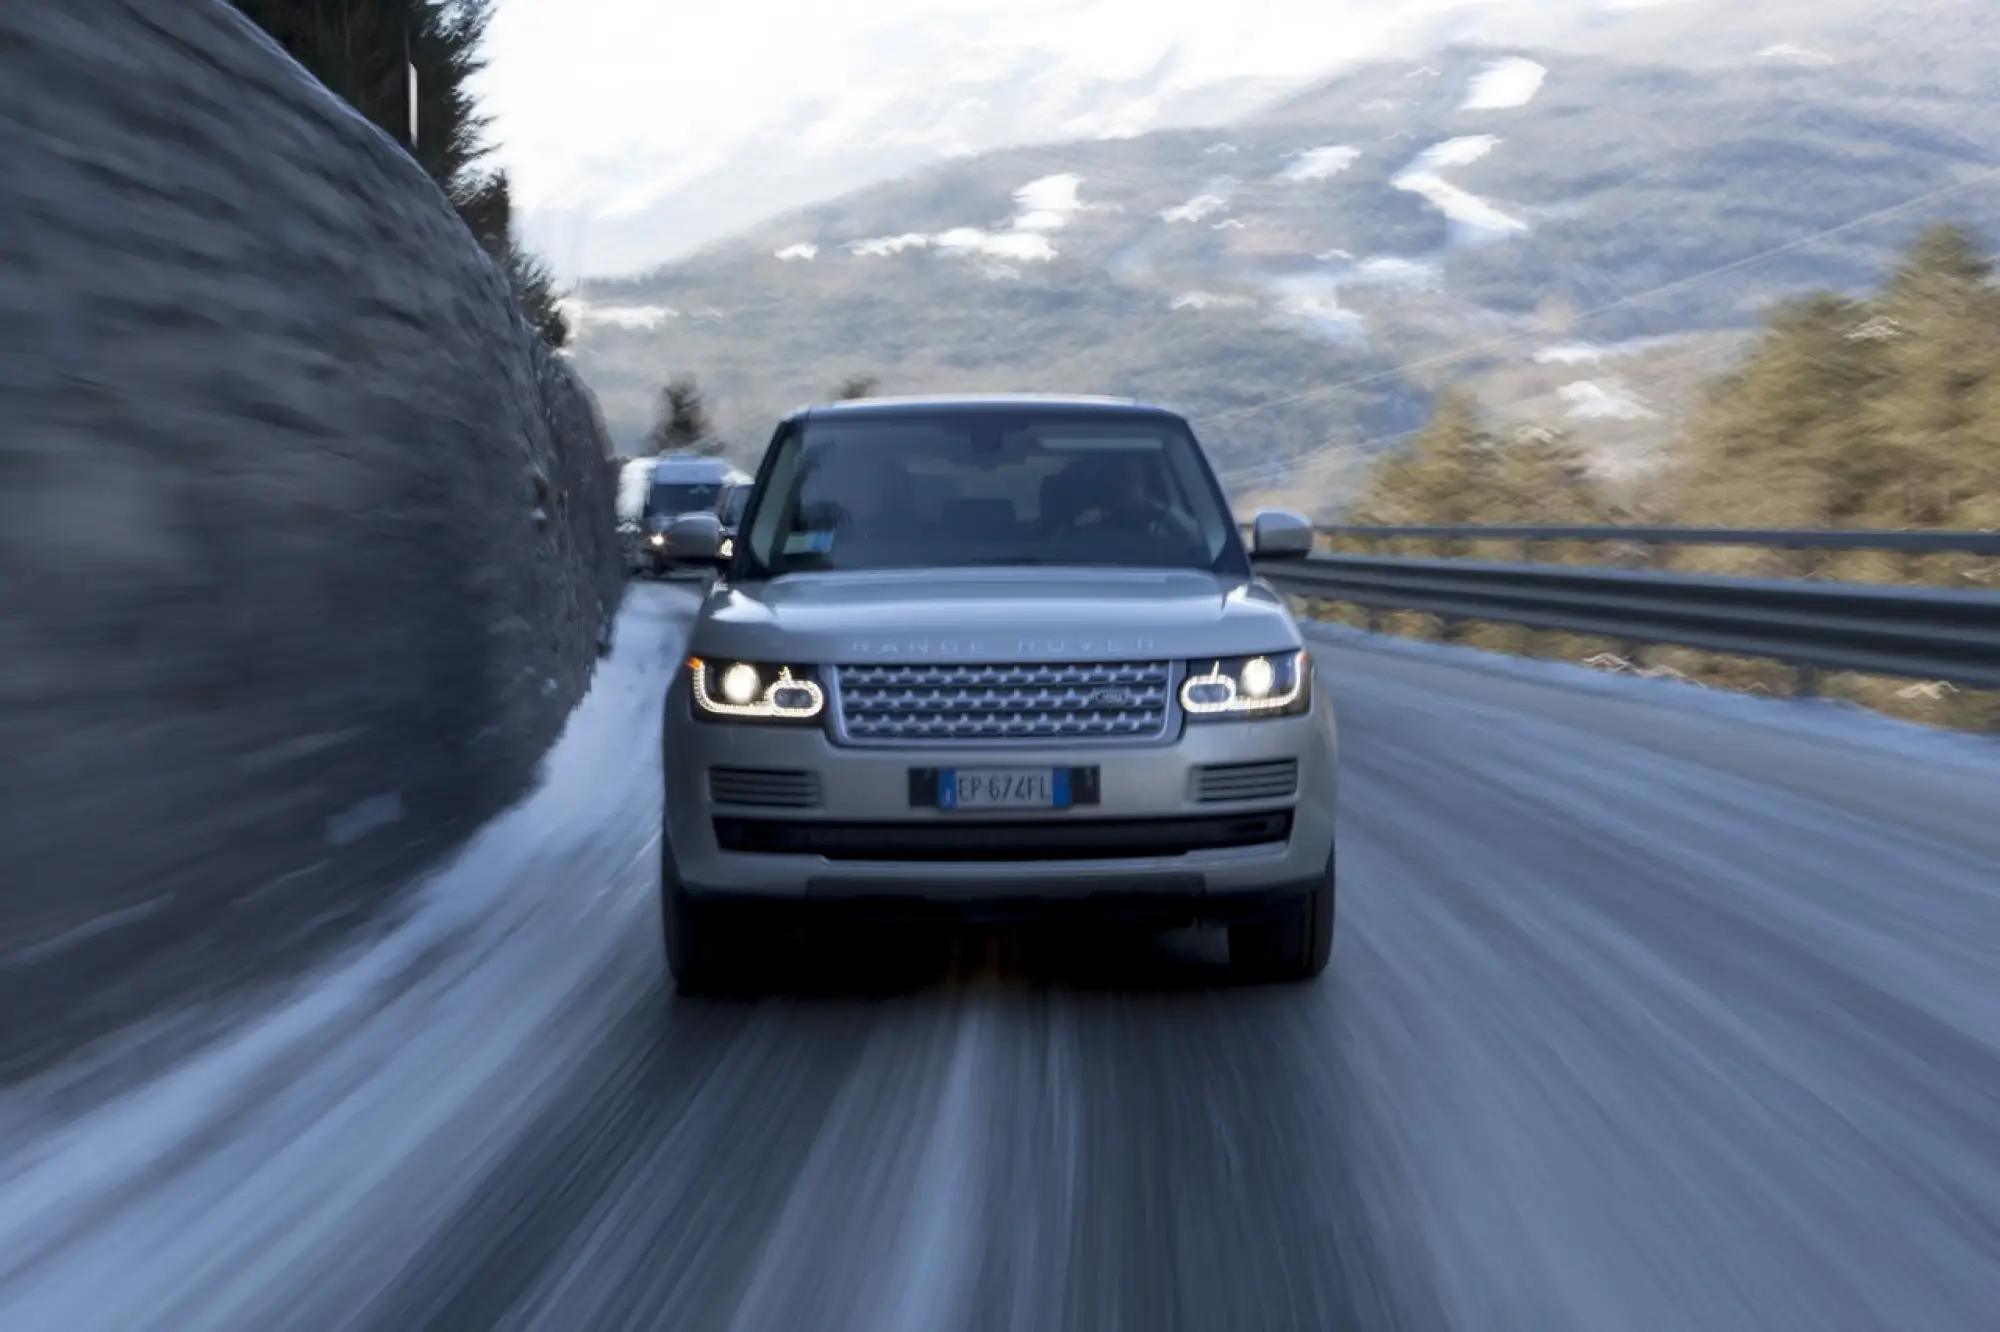 Nuova Range Rover - Presentazione stampa italiana - Bormio 2013 - 46